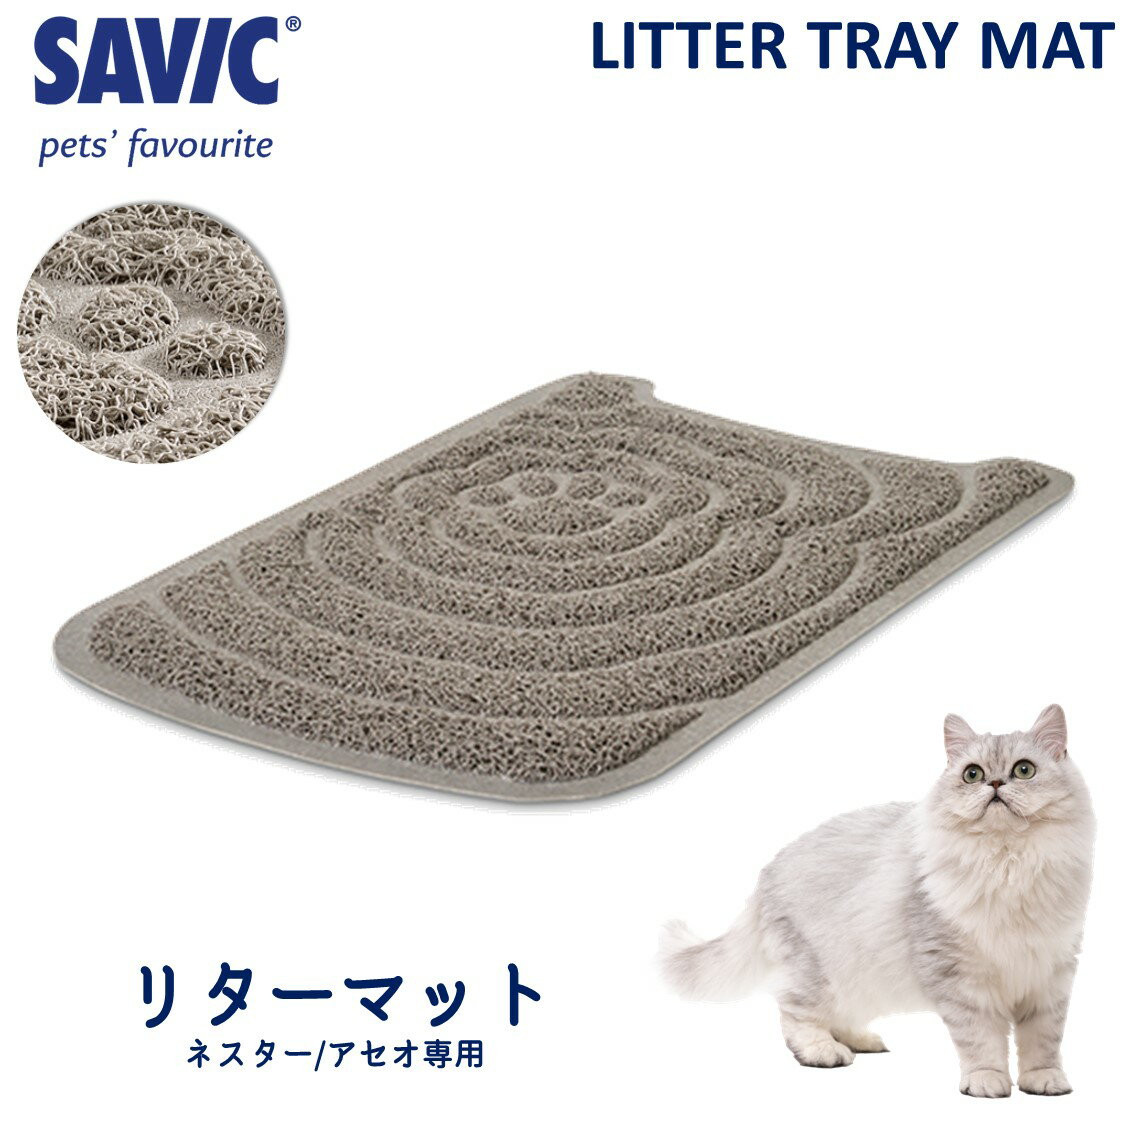 商品名SAVIC ネスタ— リターマット素材／材質PVC（ポリ塩化ビニル、塩ビ）本体サイズ(約)幅31.5×奥48.0×厚0.5cm内容物・マット本体商品説明SAVIC(サヴィッチ)は、おしゃれな愛猫用品を開発・販売している欧州ベルギーのペットブランドです。 柔軟な繊維が手足に付いた猫砂の飛び散りを防ぎます。 柔らかい素材で作られていて、愛猫の手足に優しいマットです。【検索語句】砂取りマット トイレマット 飛散防止 滑り止め ネスタ—専用 アセオ専用 SAVIC サヴィッチ ネスター リターマット FREEBIRD フリーバード